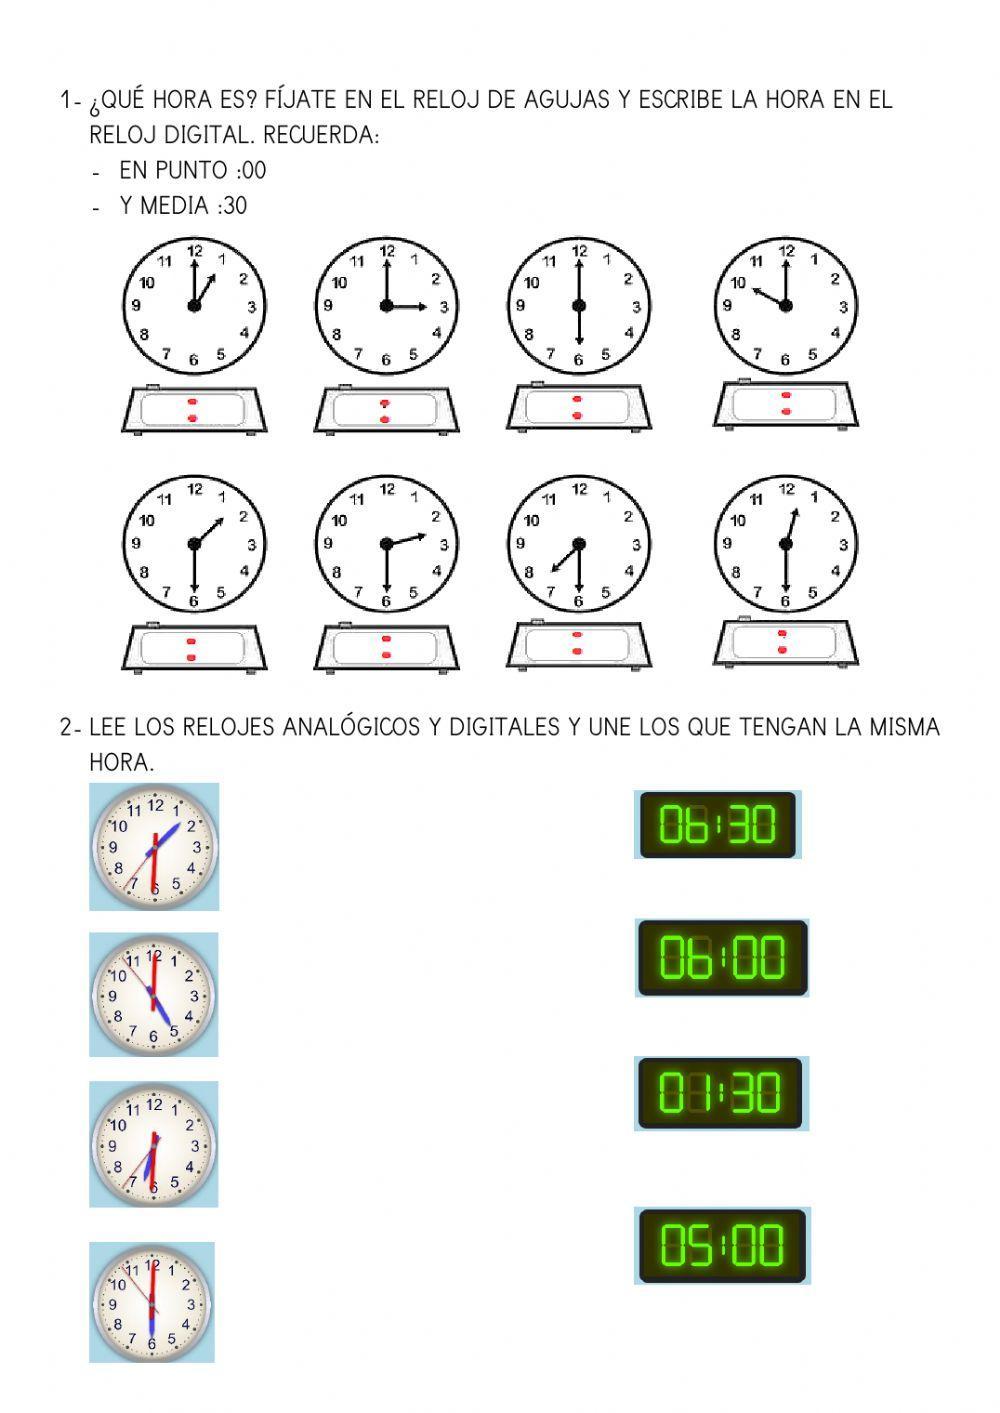 ¿Qué horas es? Reloj analógico y digital (en punto, y media)